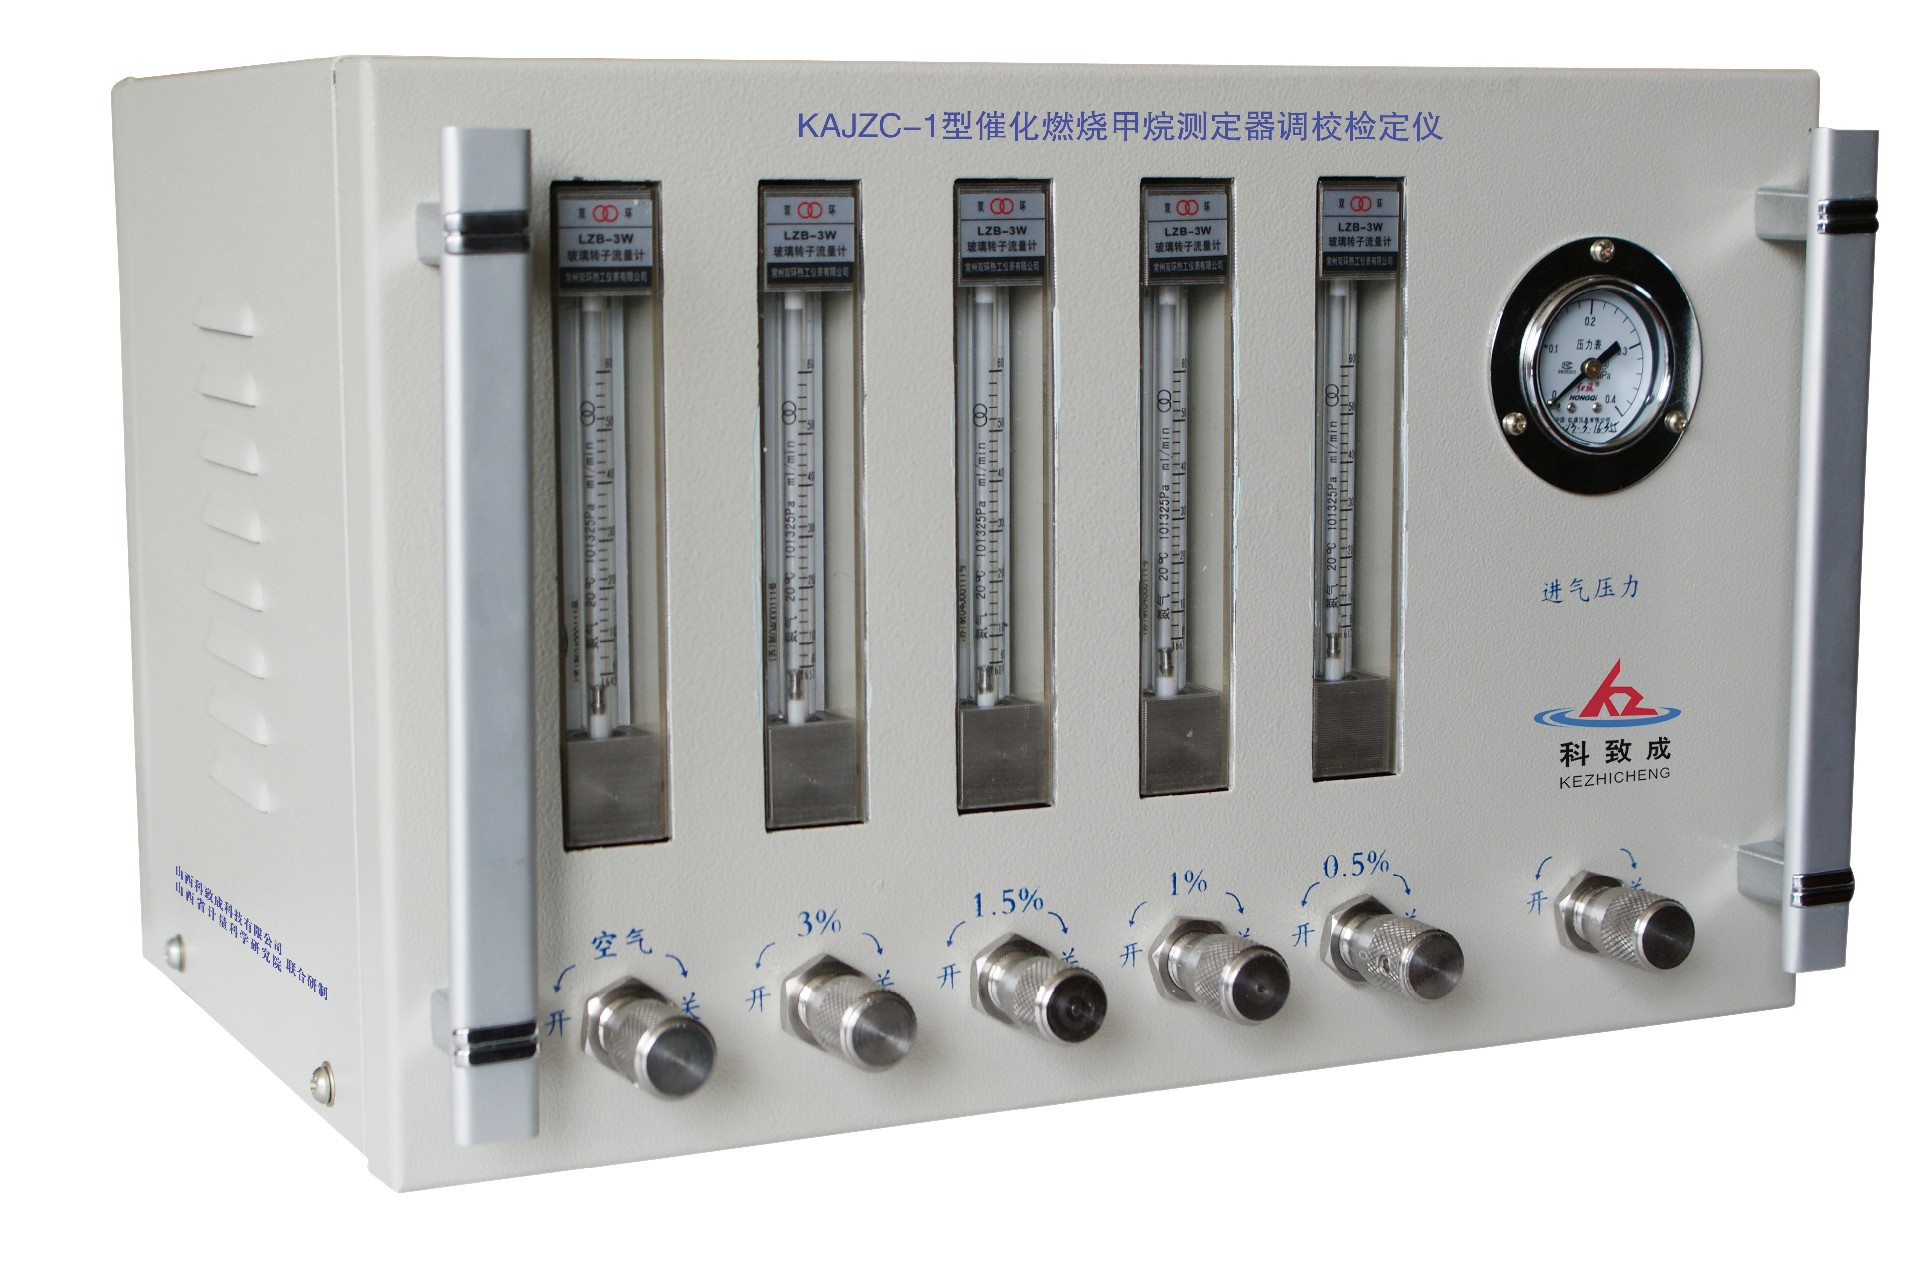 开封KAJZC-1型催化燃烧甲烷测定器调校检定仪